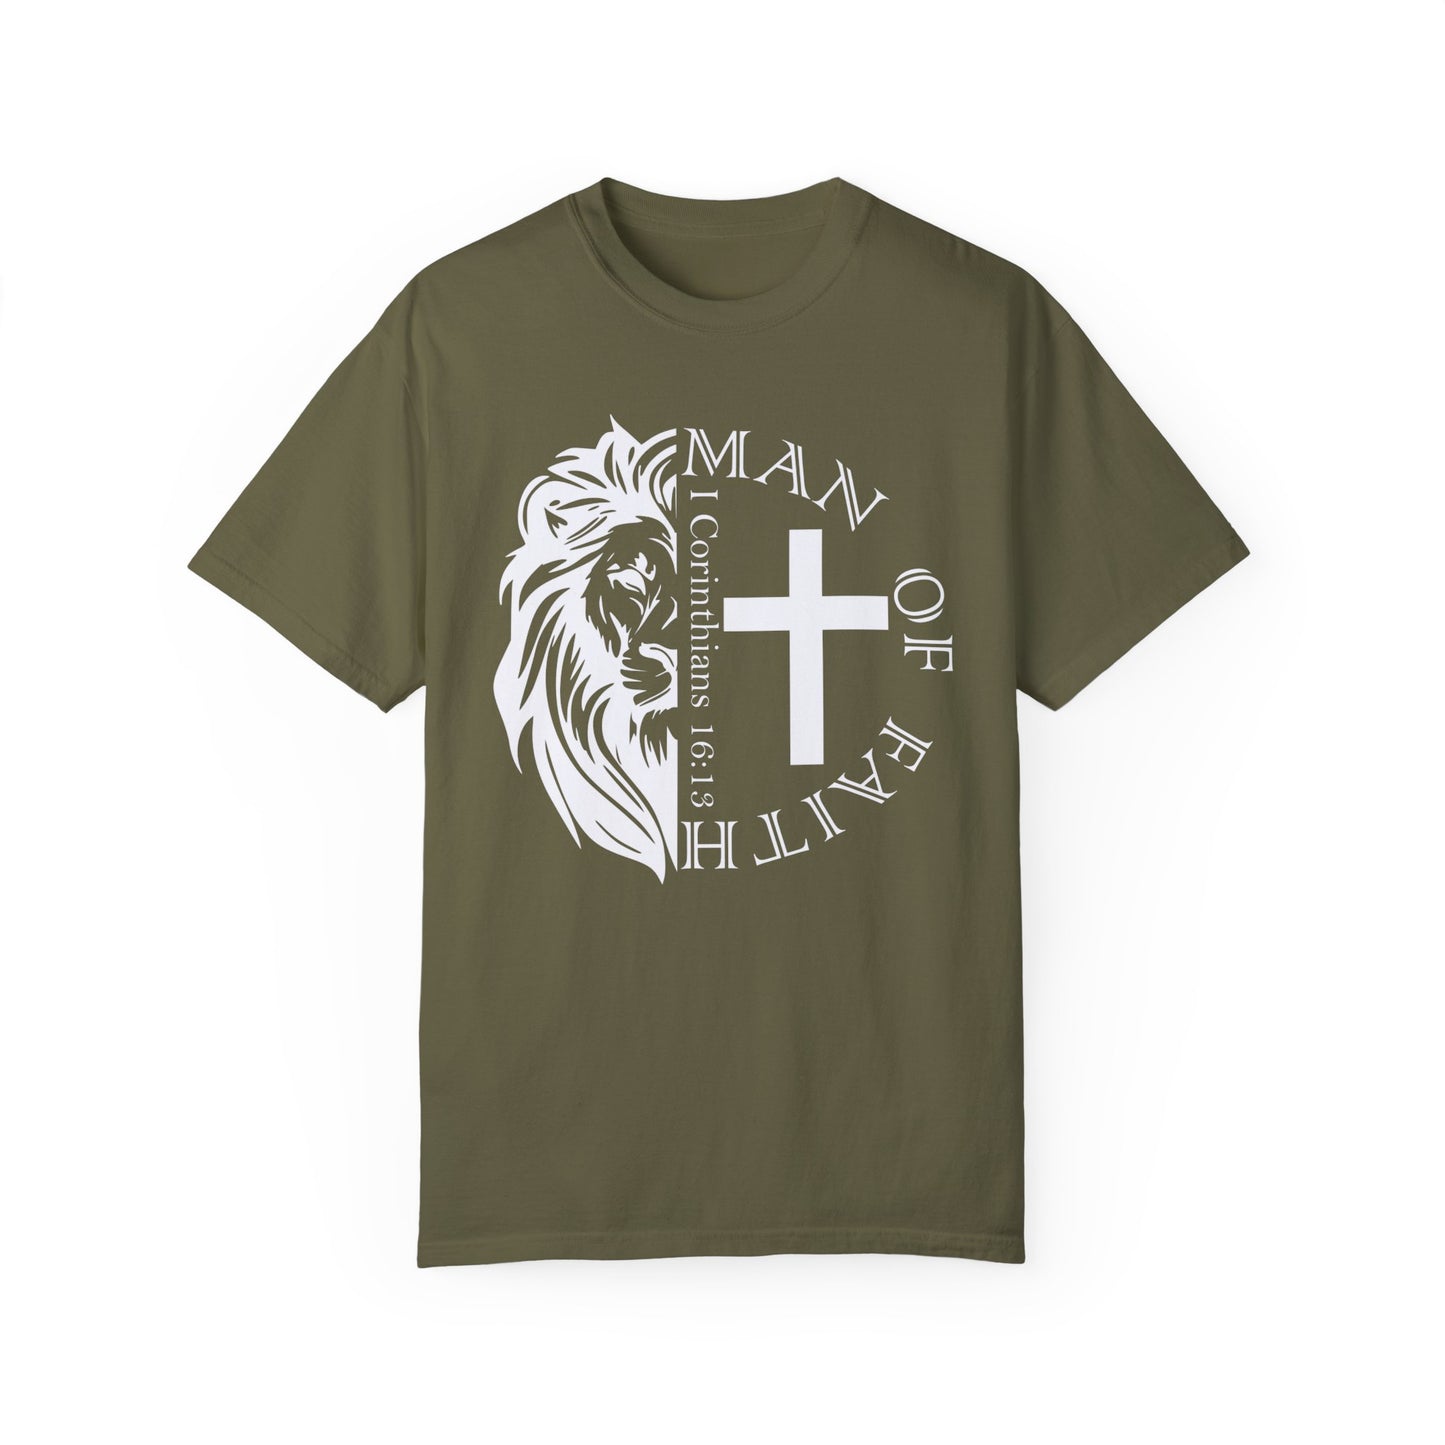 Man Of Faith T-shirt